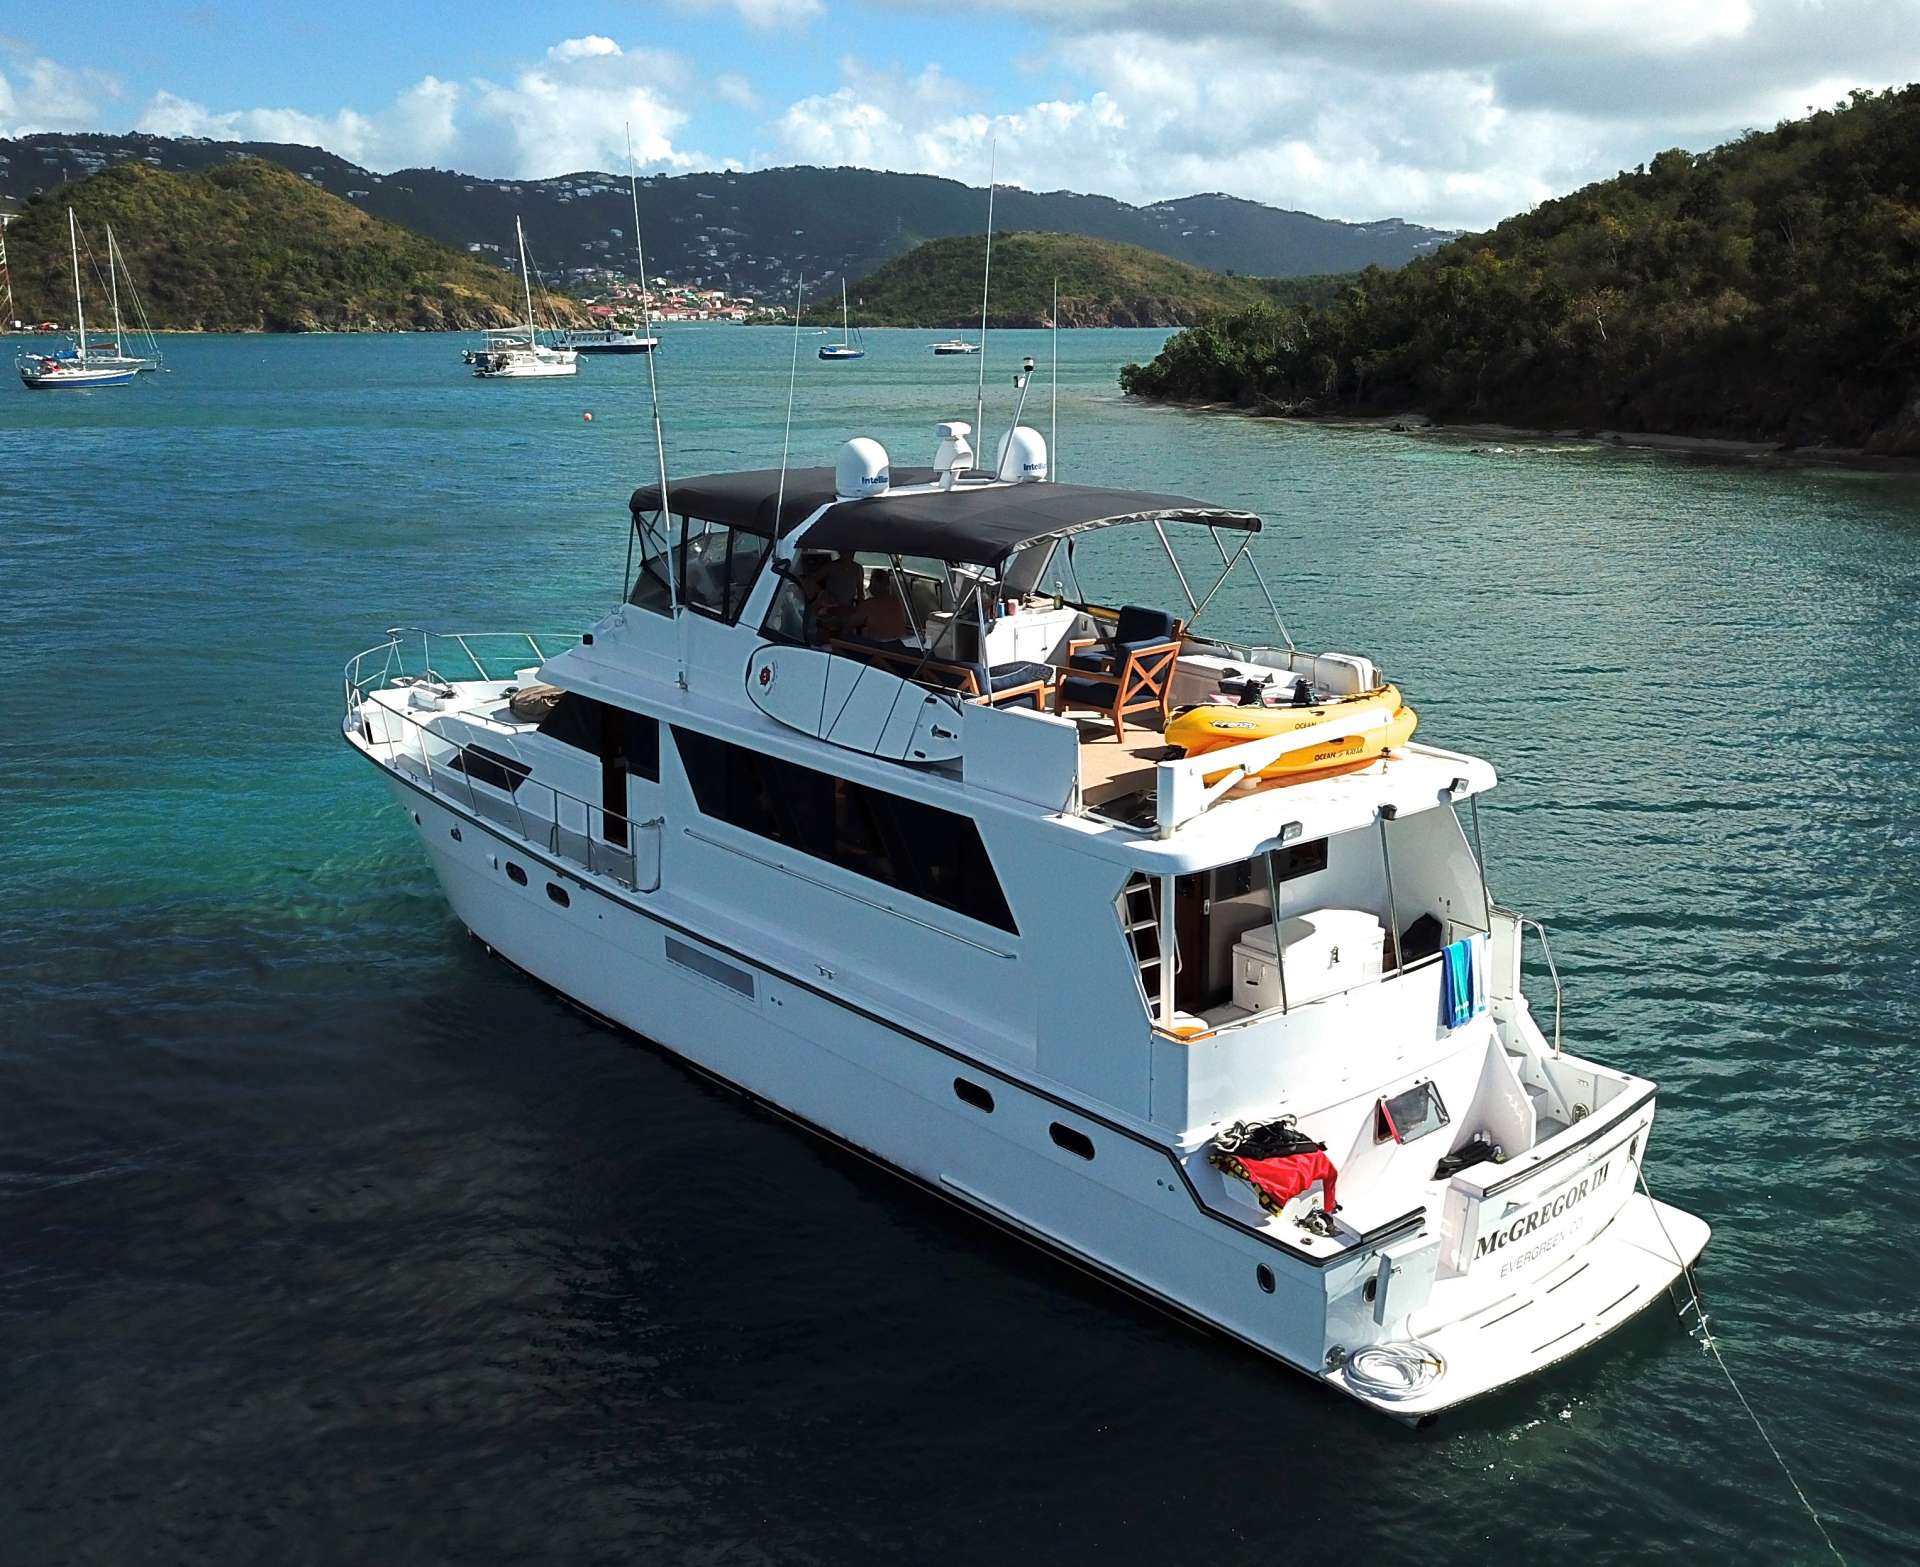 McGregor III Crewed Motoryacht Charters at Anchor in the Virgin Islands